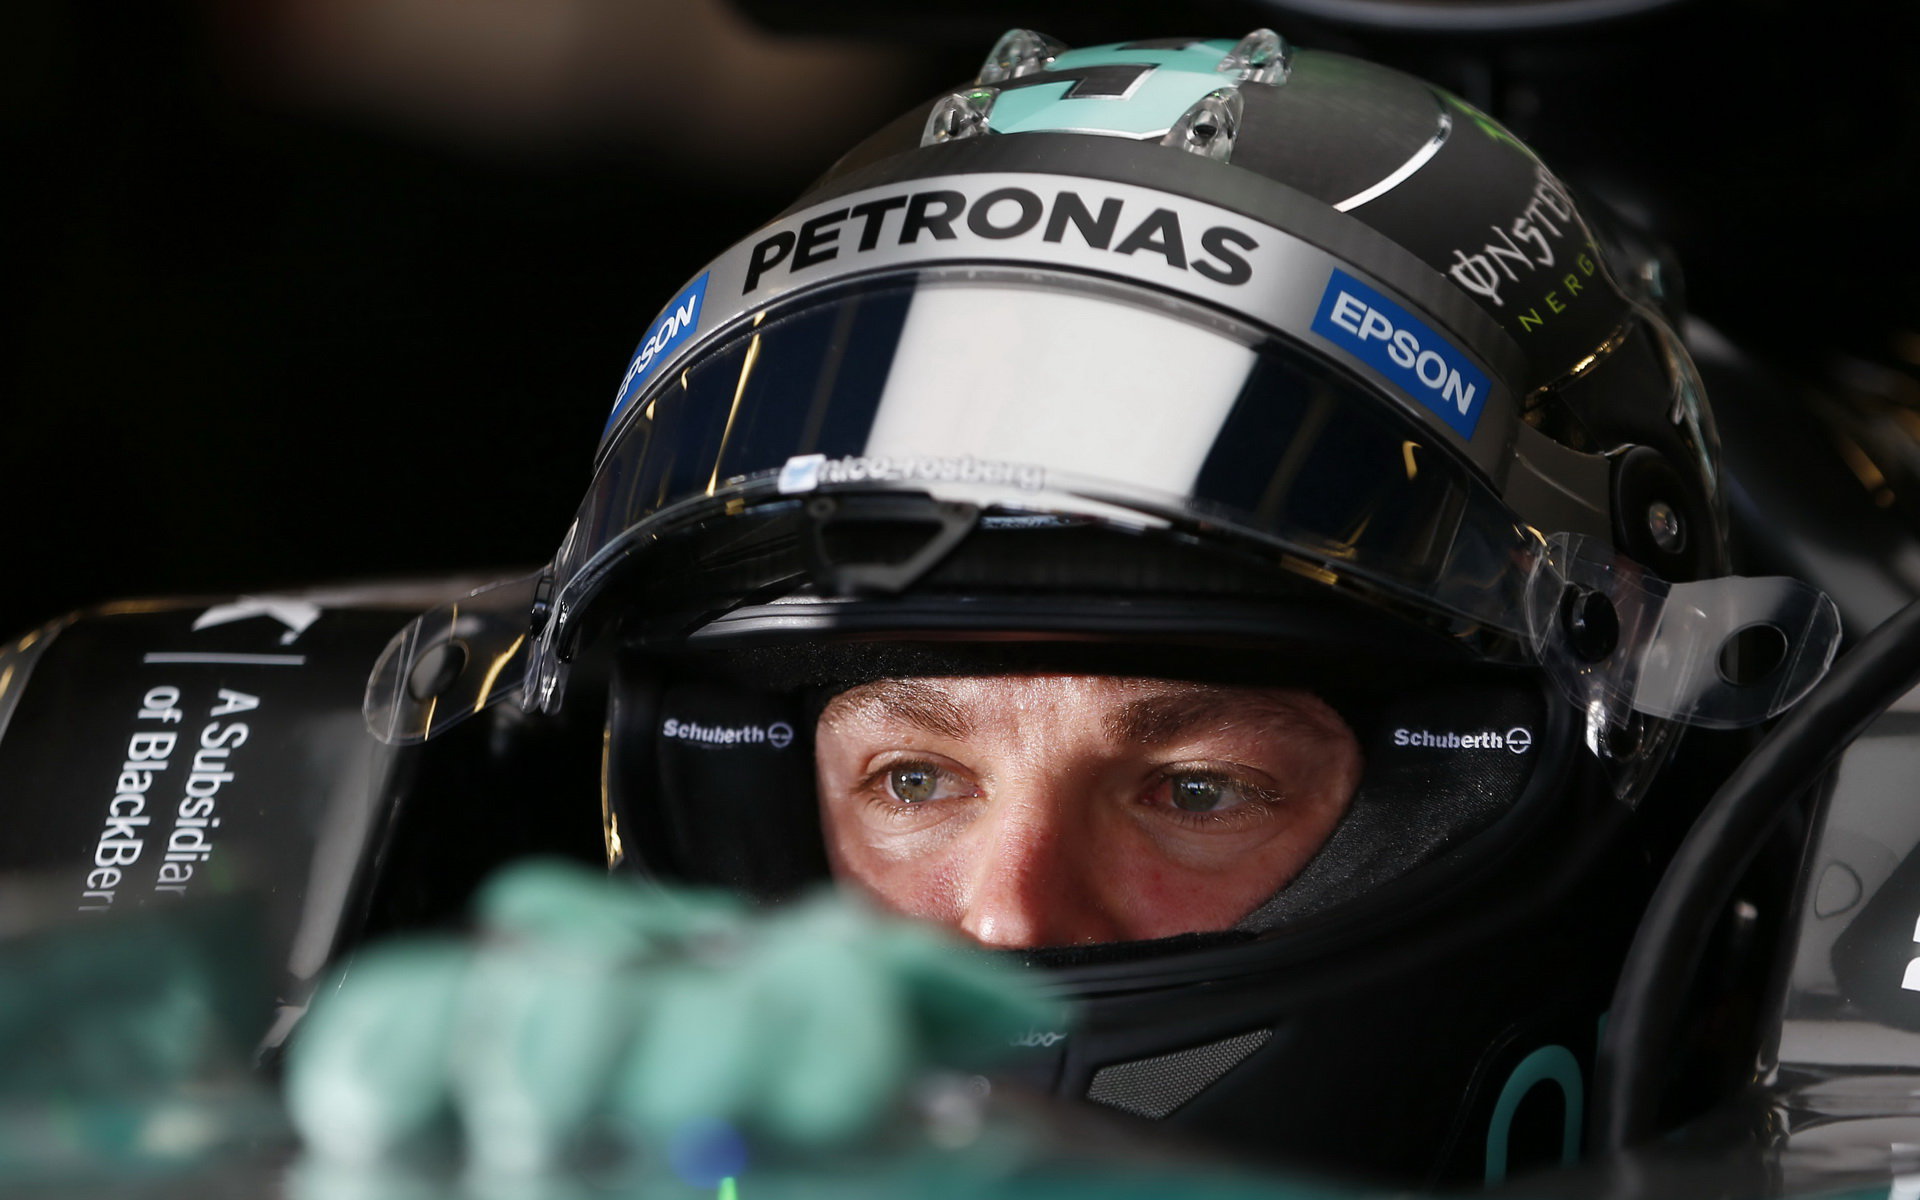 Já i Sebastian jsme měli neuvěřitelné štěstí, tvrdí Rosberg